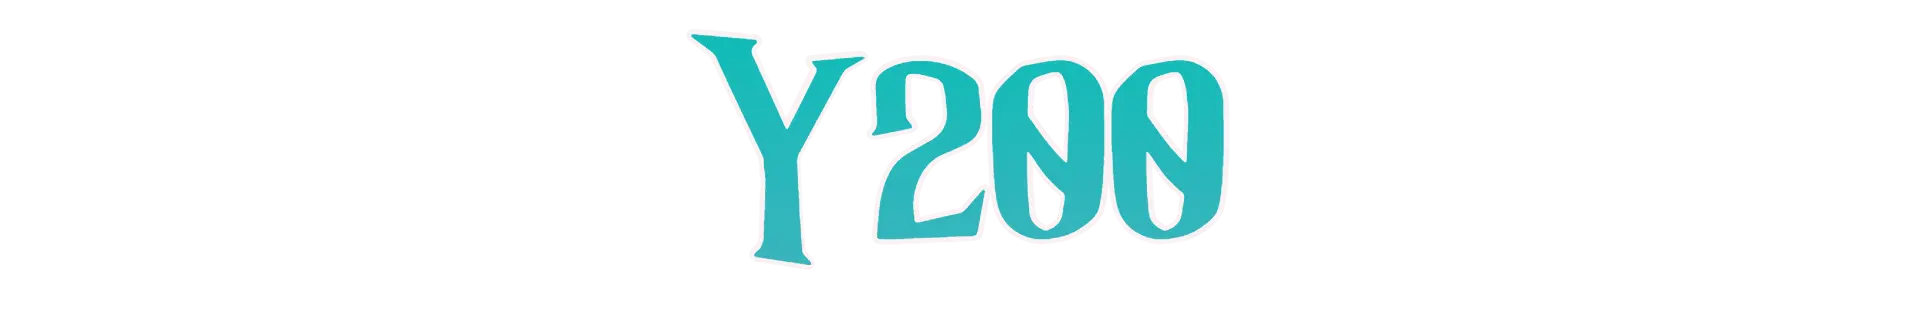 Y200